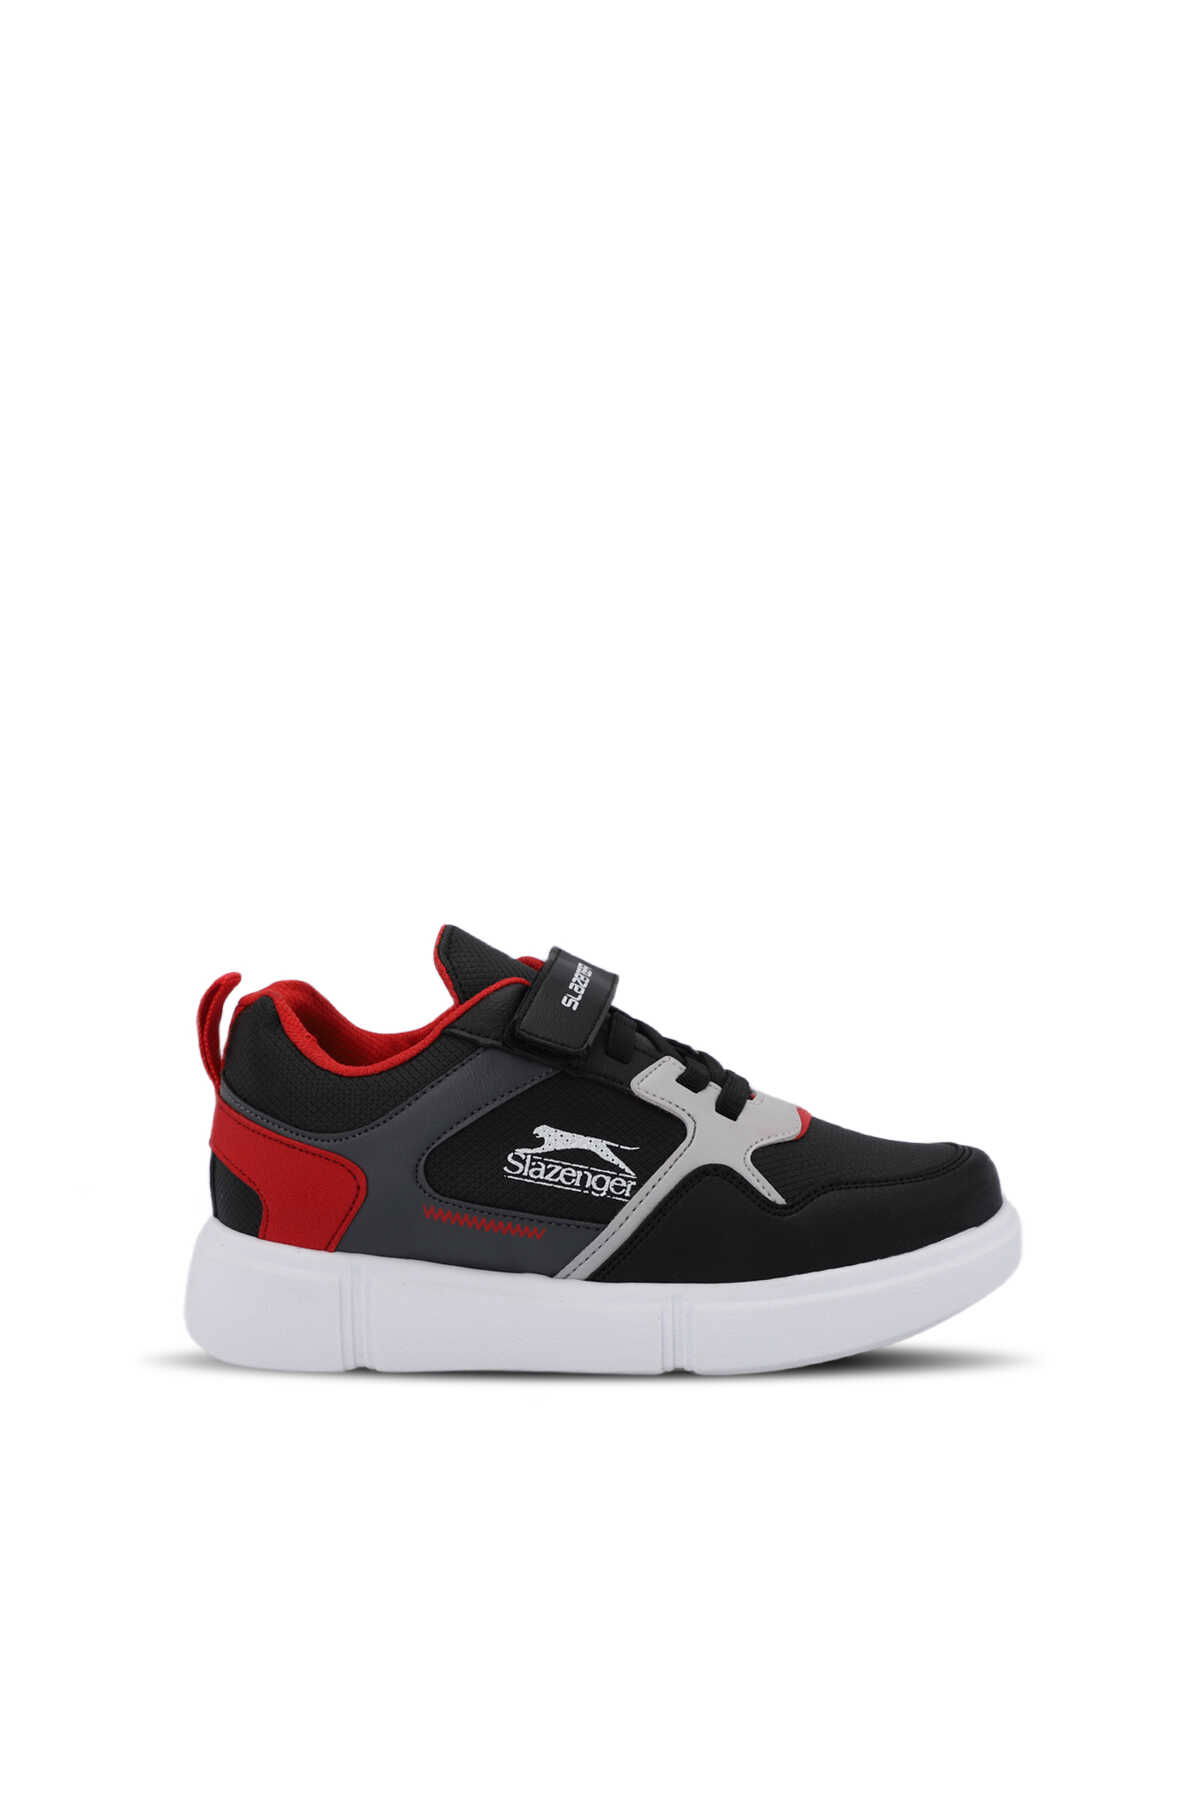 Slazenger - Slazenger KAZUE Sneaker Unisex Çocuk Ayakkabı Siyah / Kırmızı